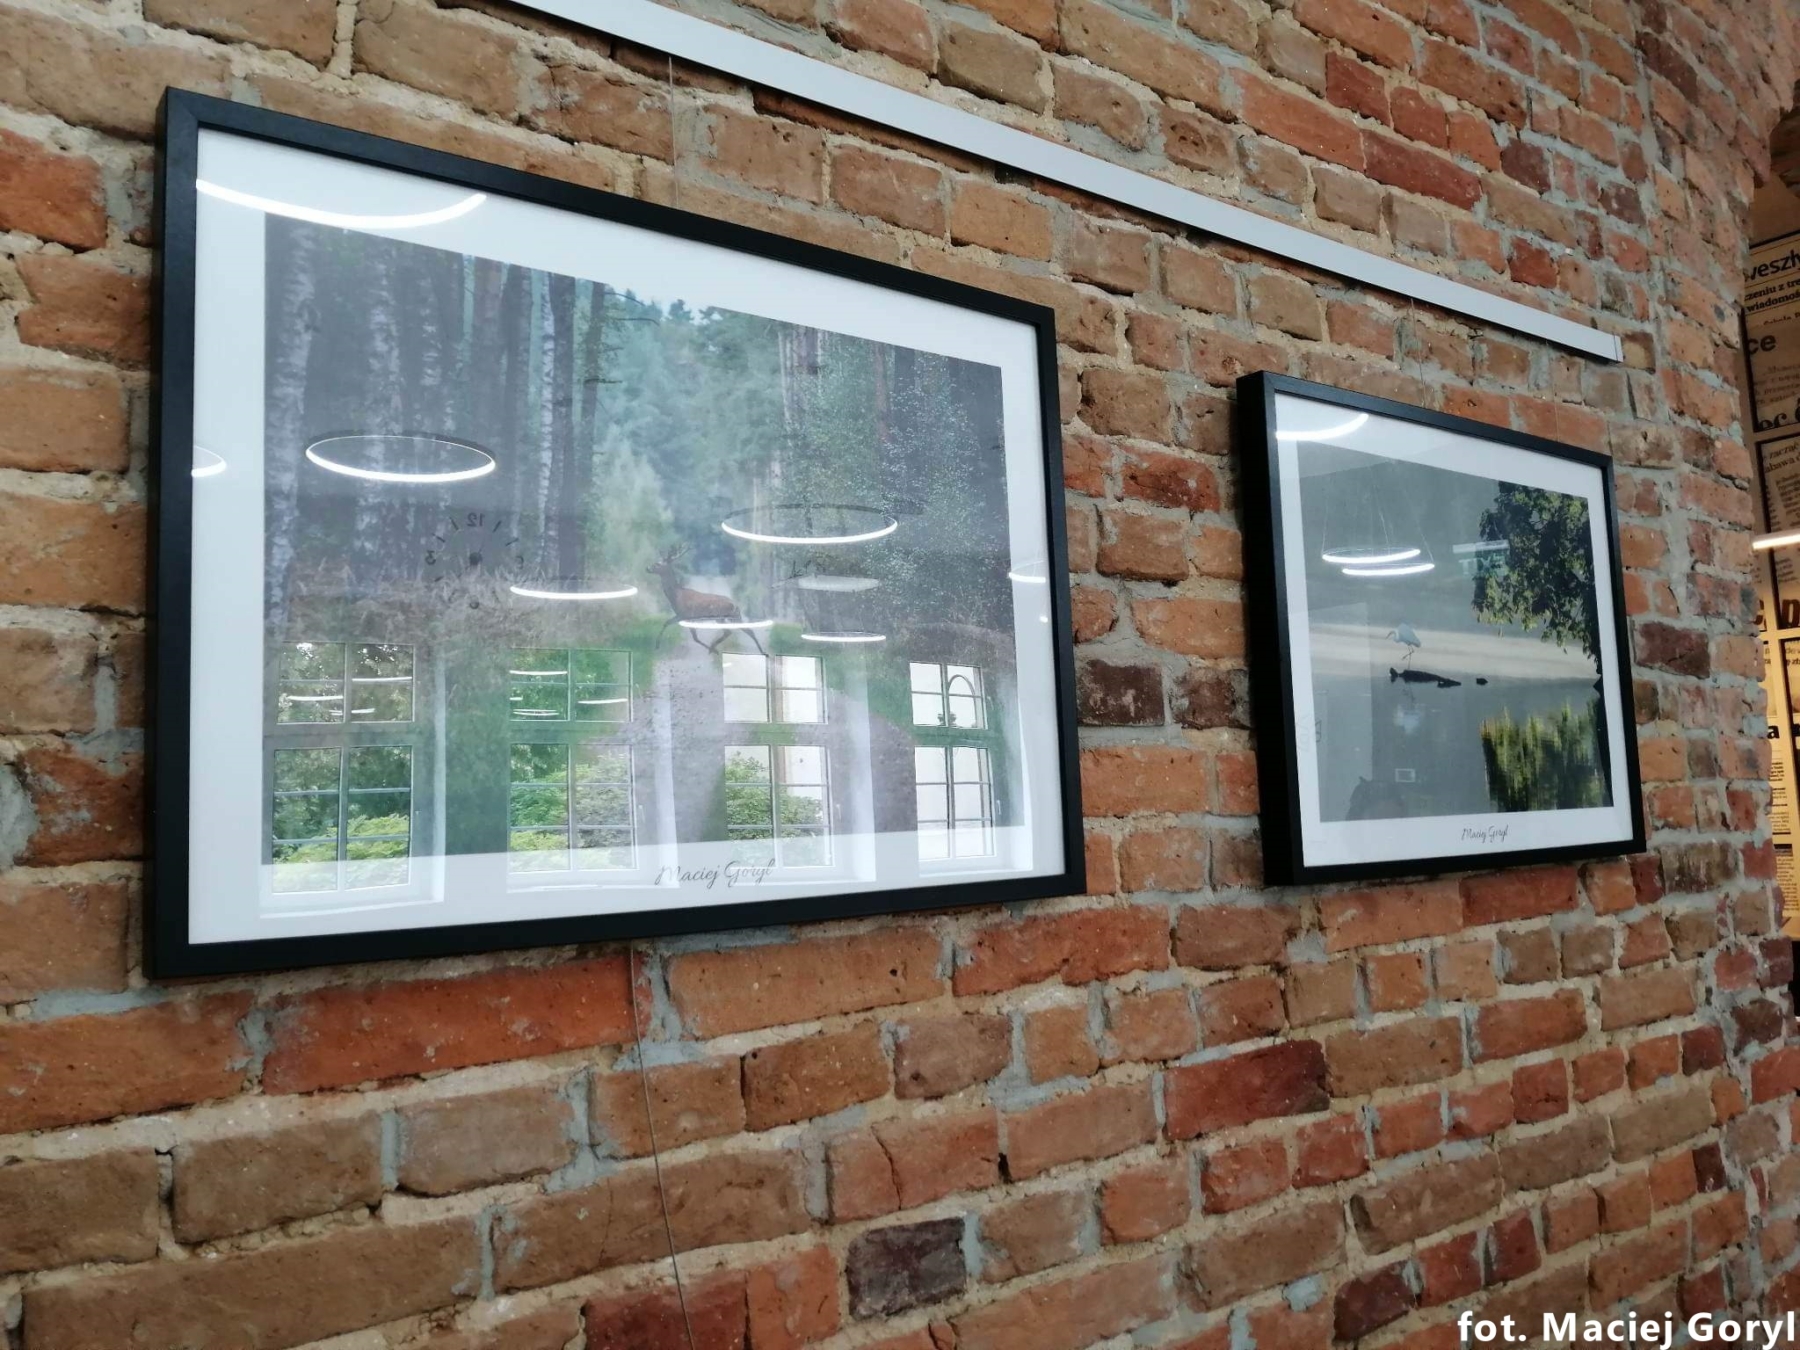 Fotografie Macieja Goryla wiszące w galerii na ścianie